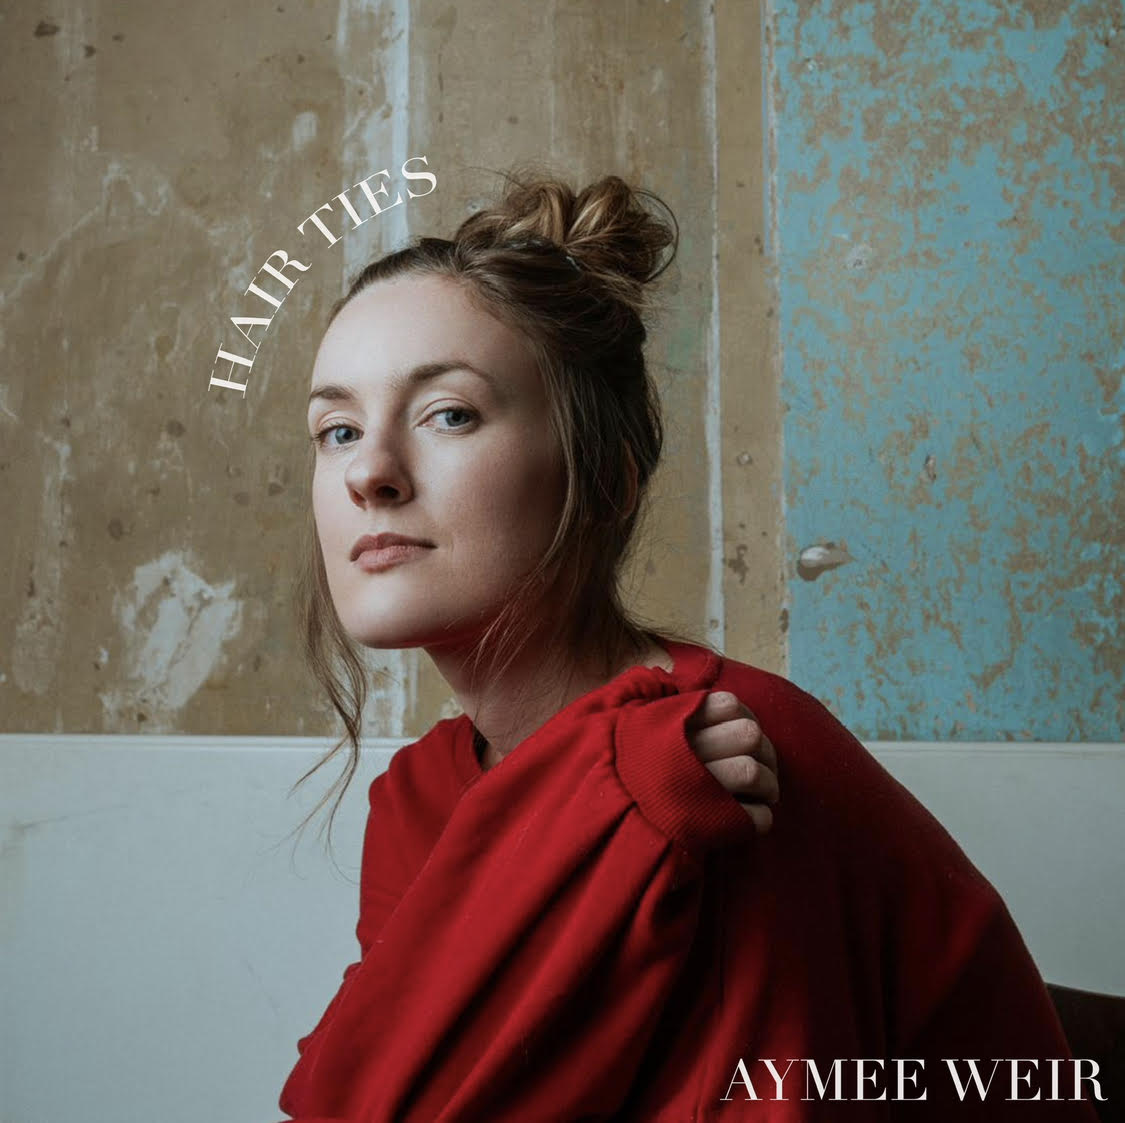 LISTEN: “Hair Ties” by Aymee Weir